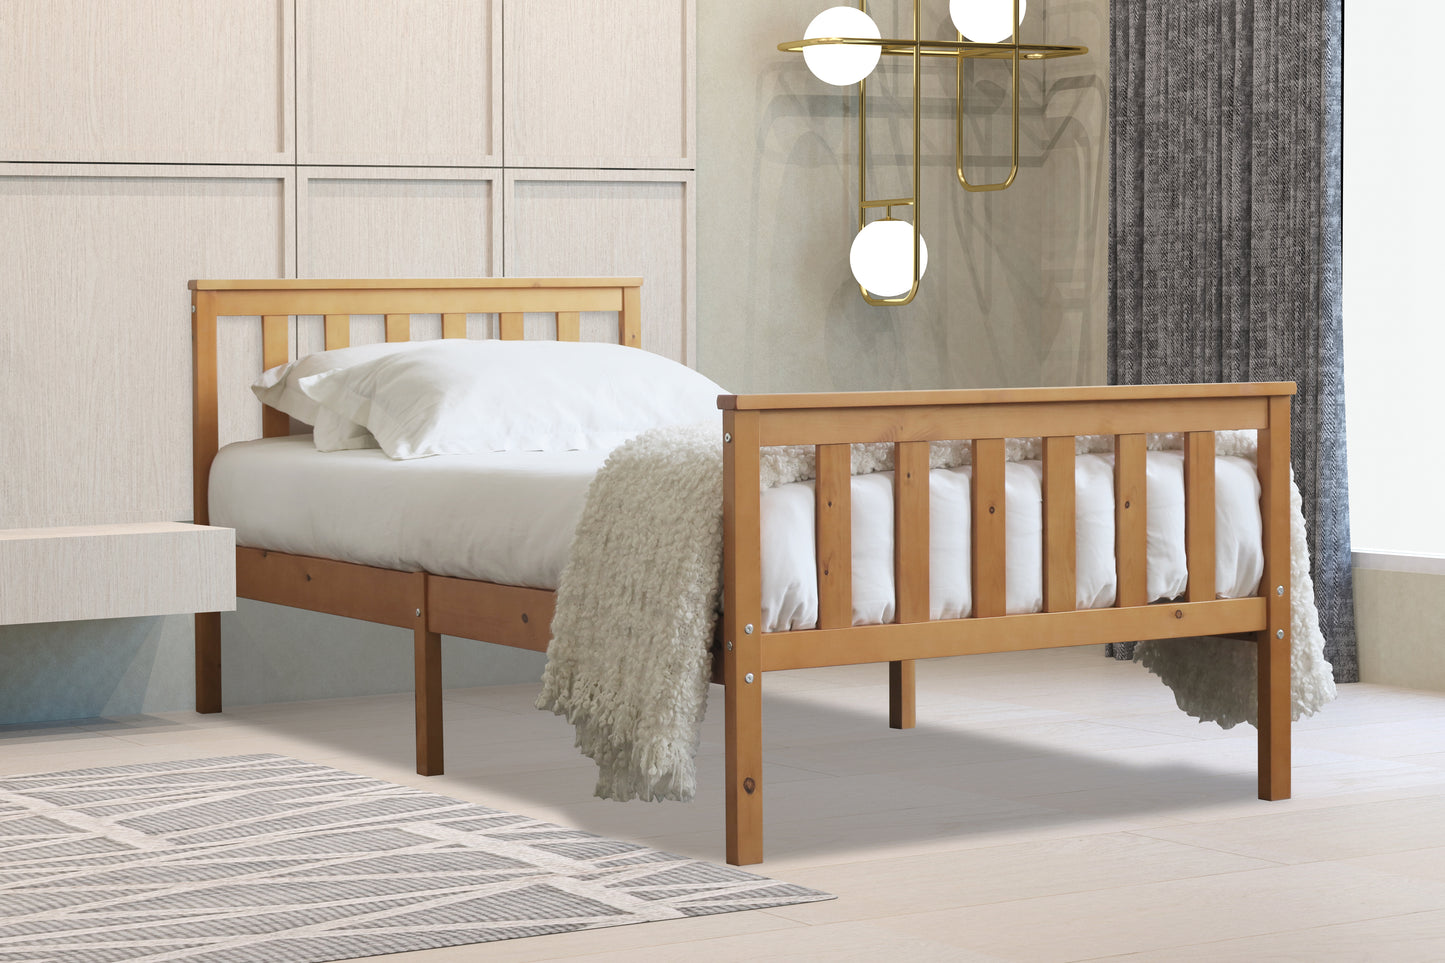 Flintshire Marnell Wooden Bed Frame